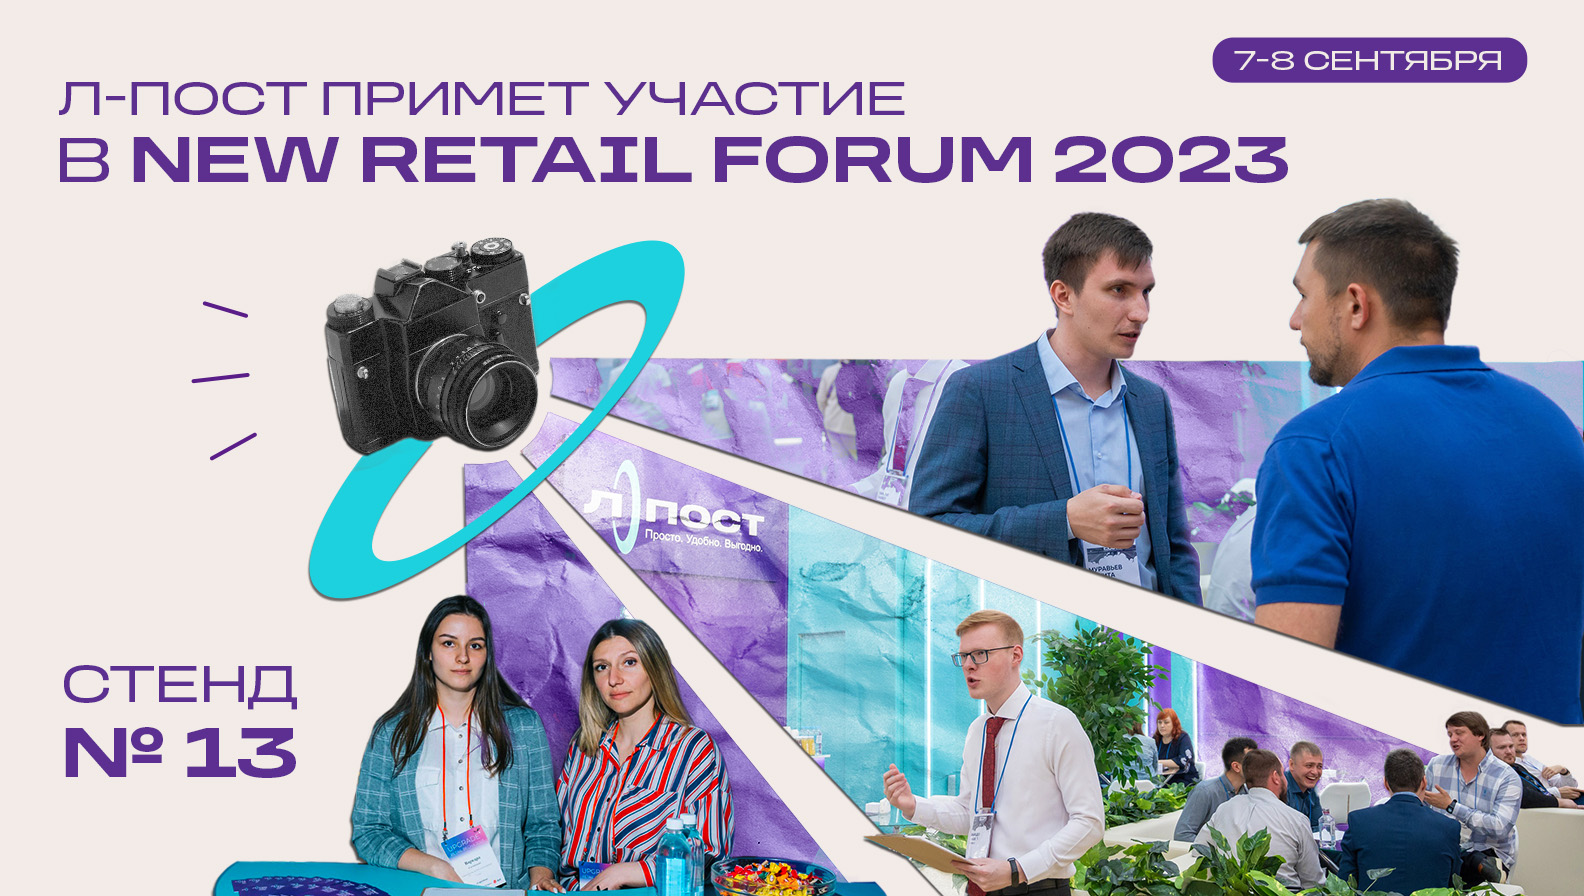 Встречаемся на выставке New Retail Forum 2023